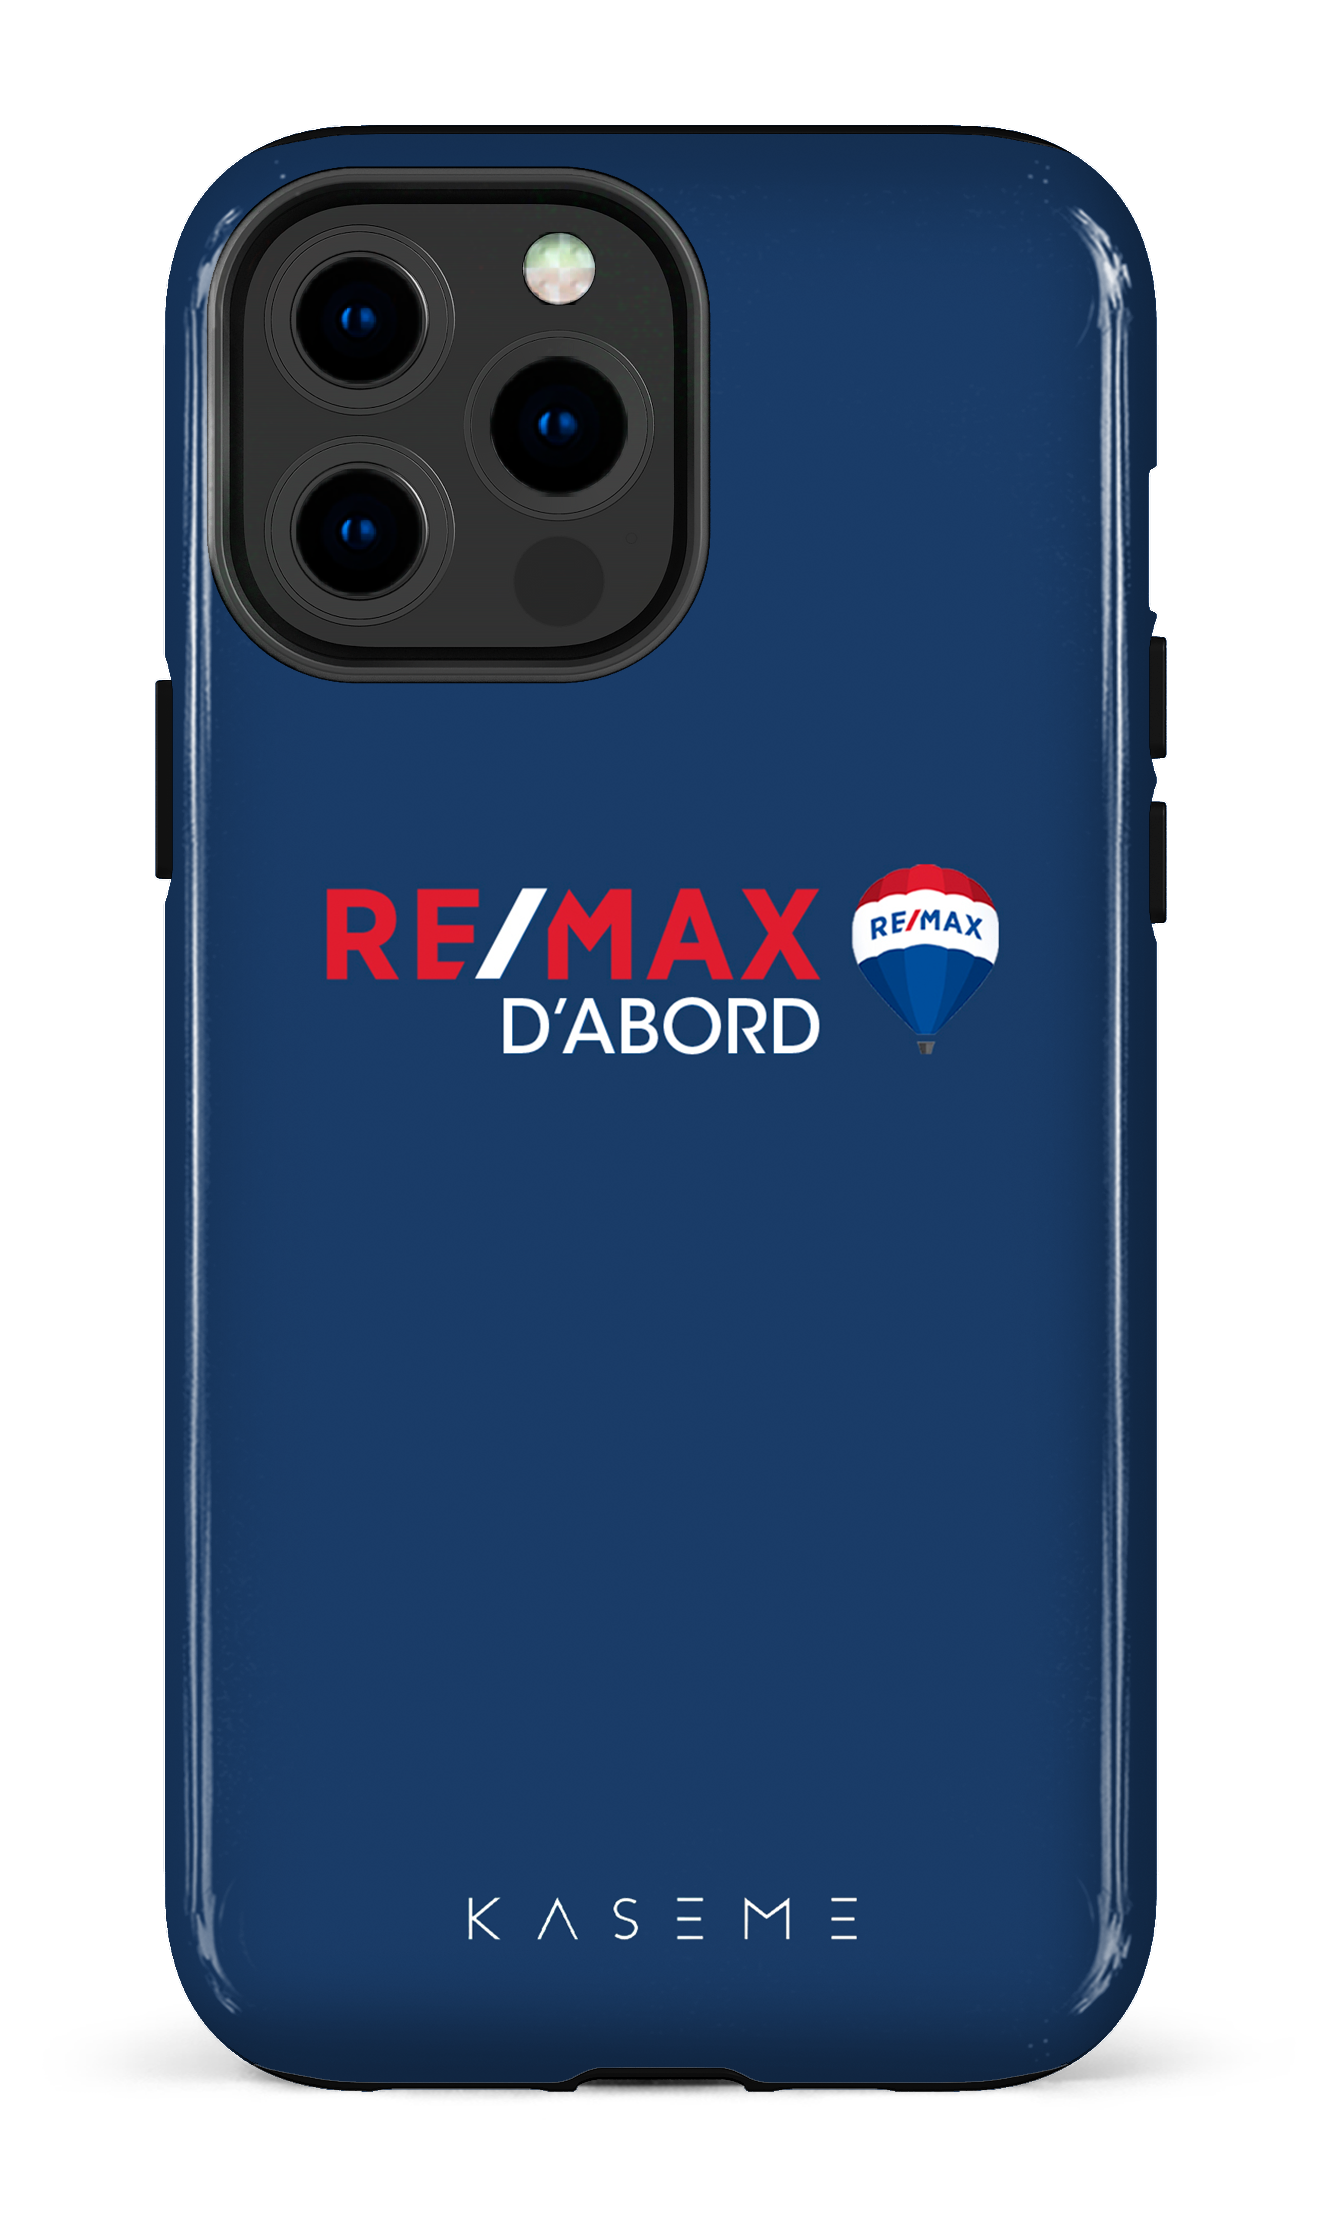 Remax D'abord Bleu - iPhone 13 Pro Max